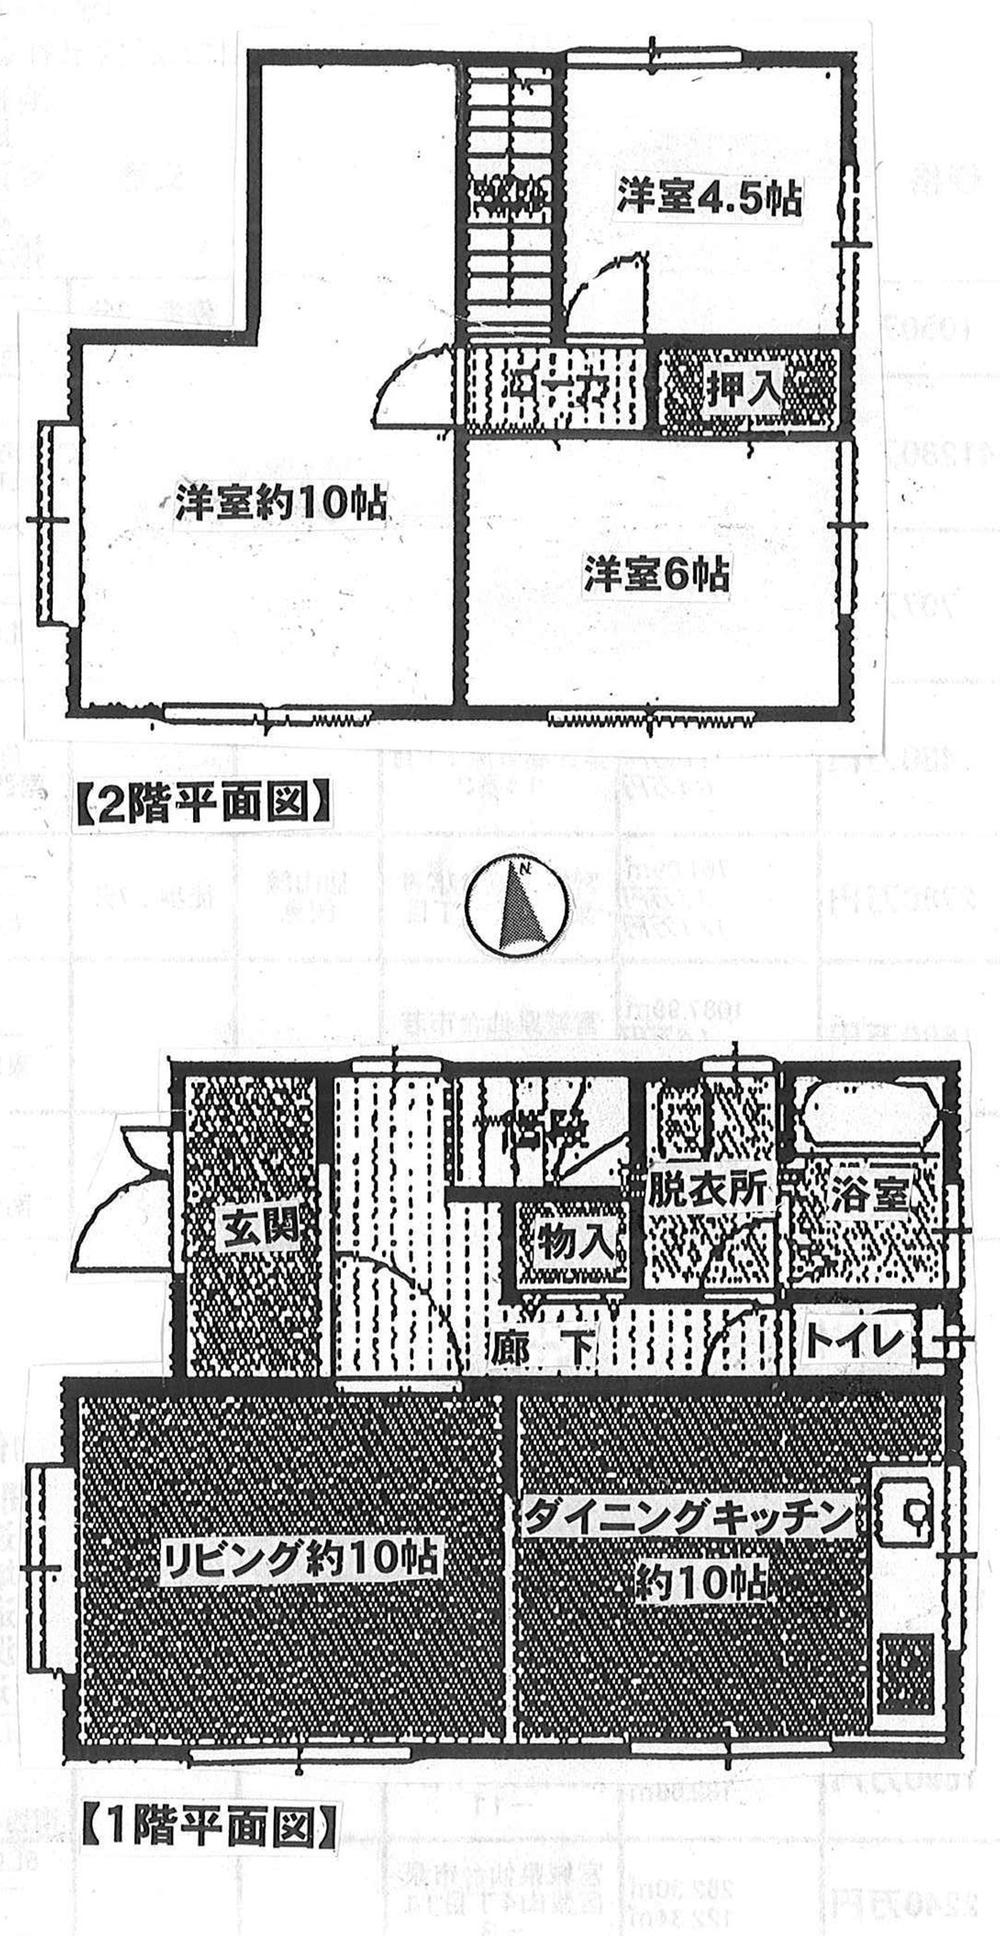 Floor plan. 14.8 million yen, 4DK, Land area 167.25 sq m , Building area 84.02 sq m